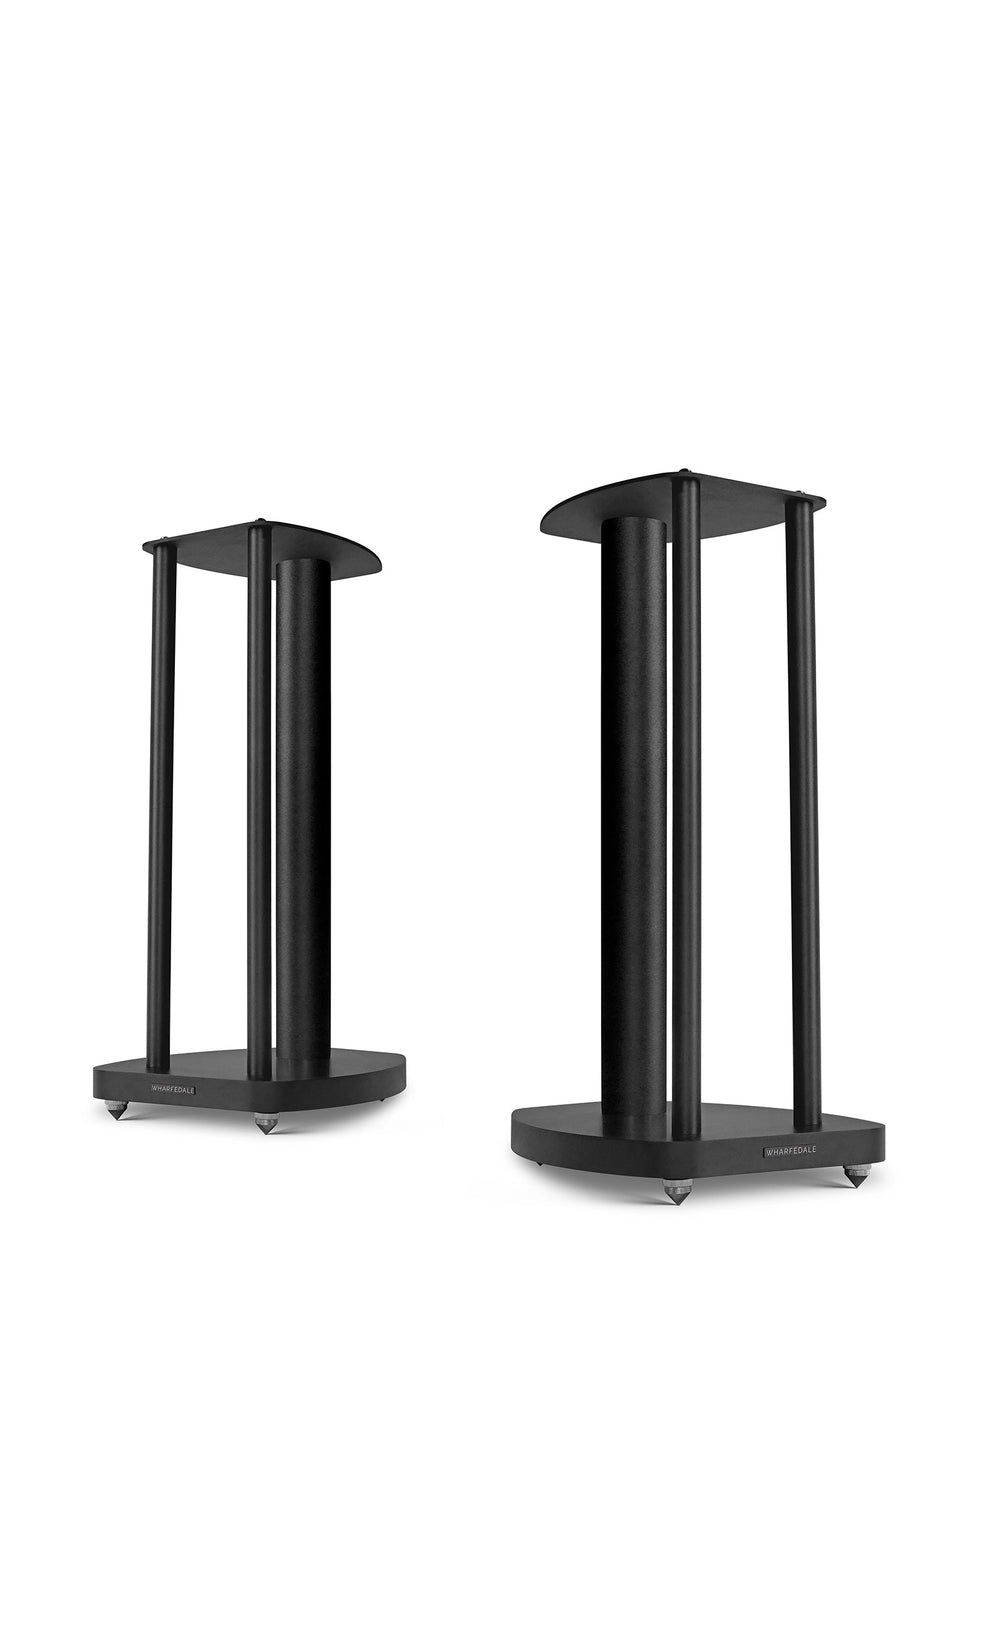 [B-Stock] EVO4 Speaker Stands (Pair)